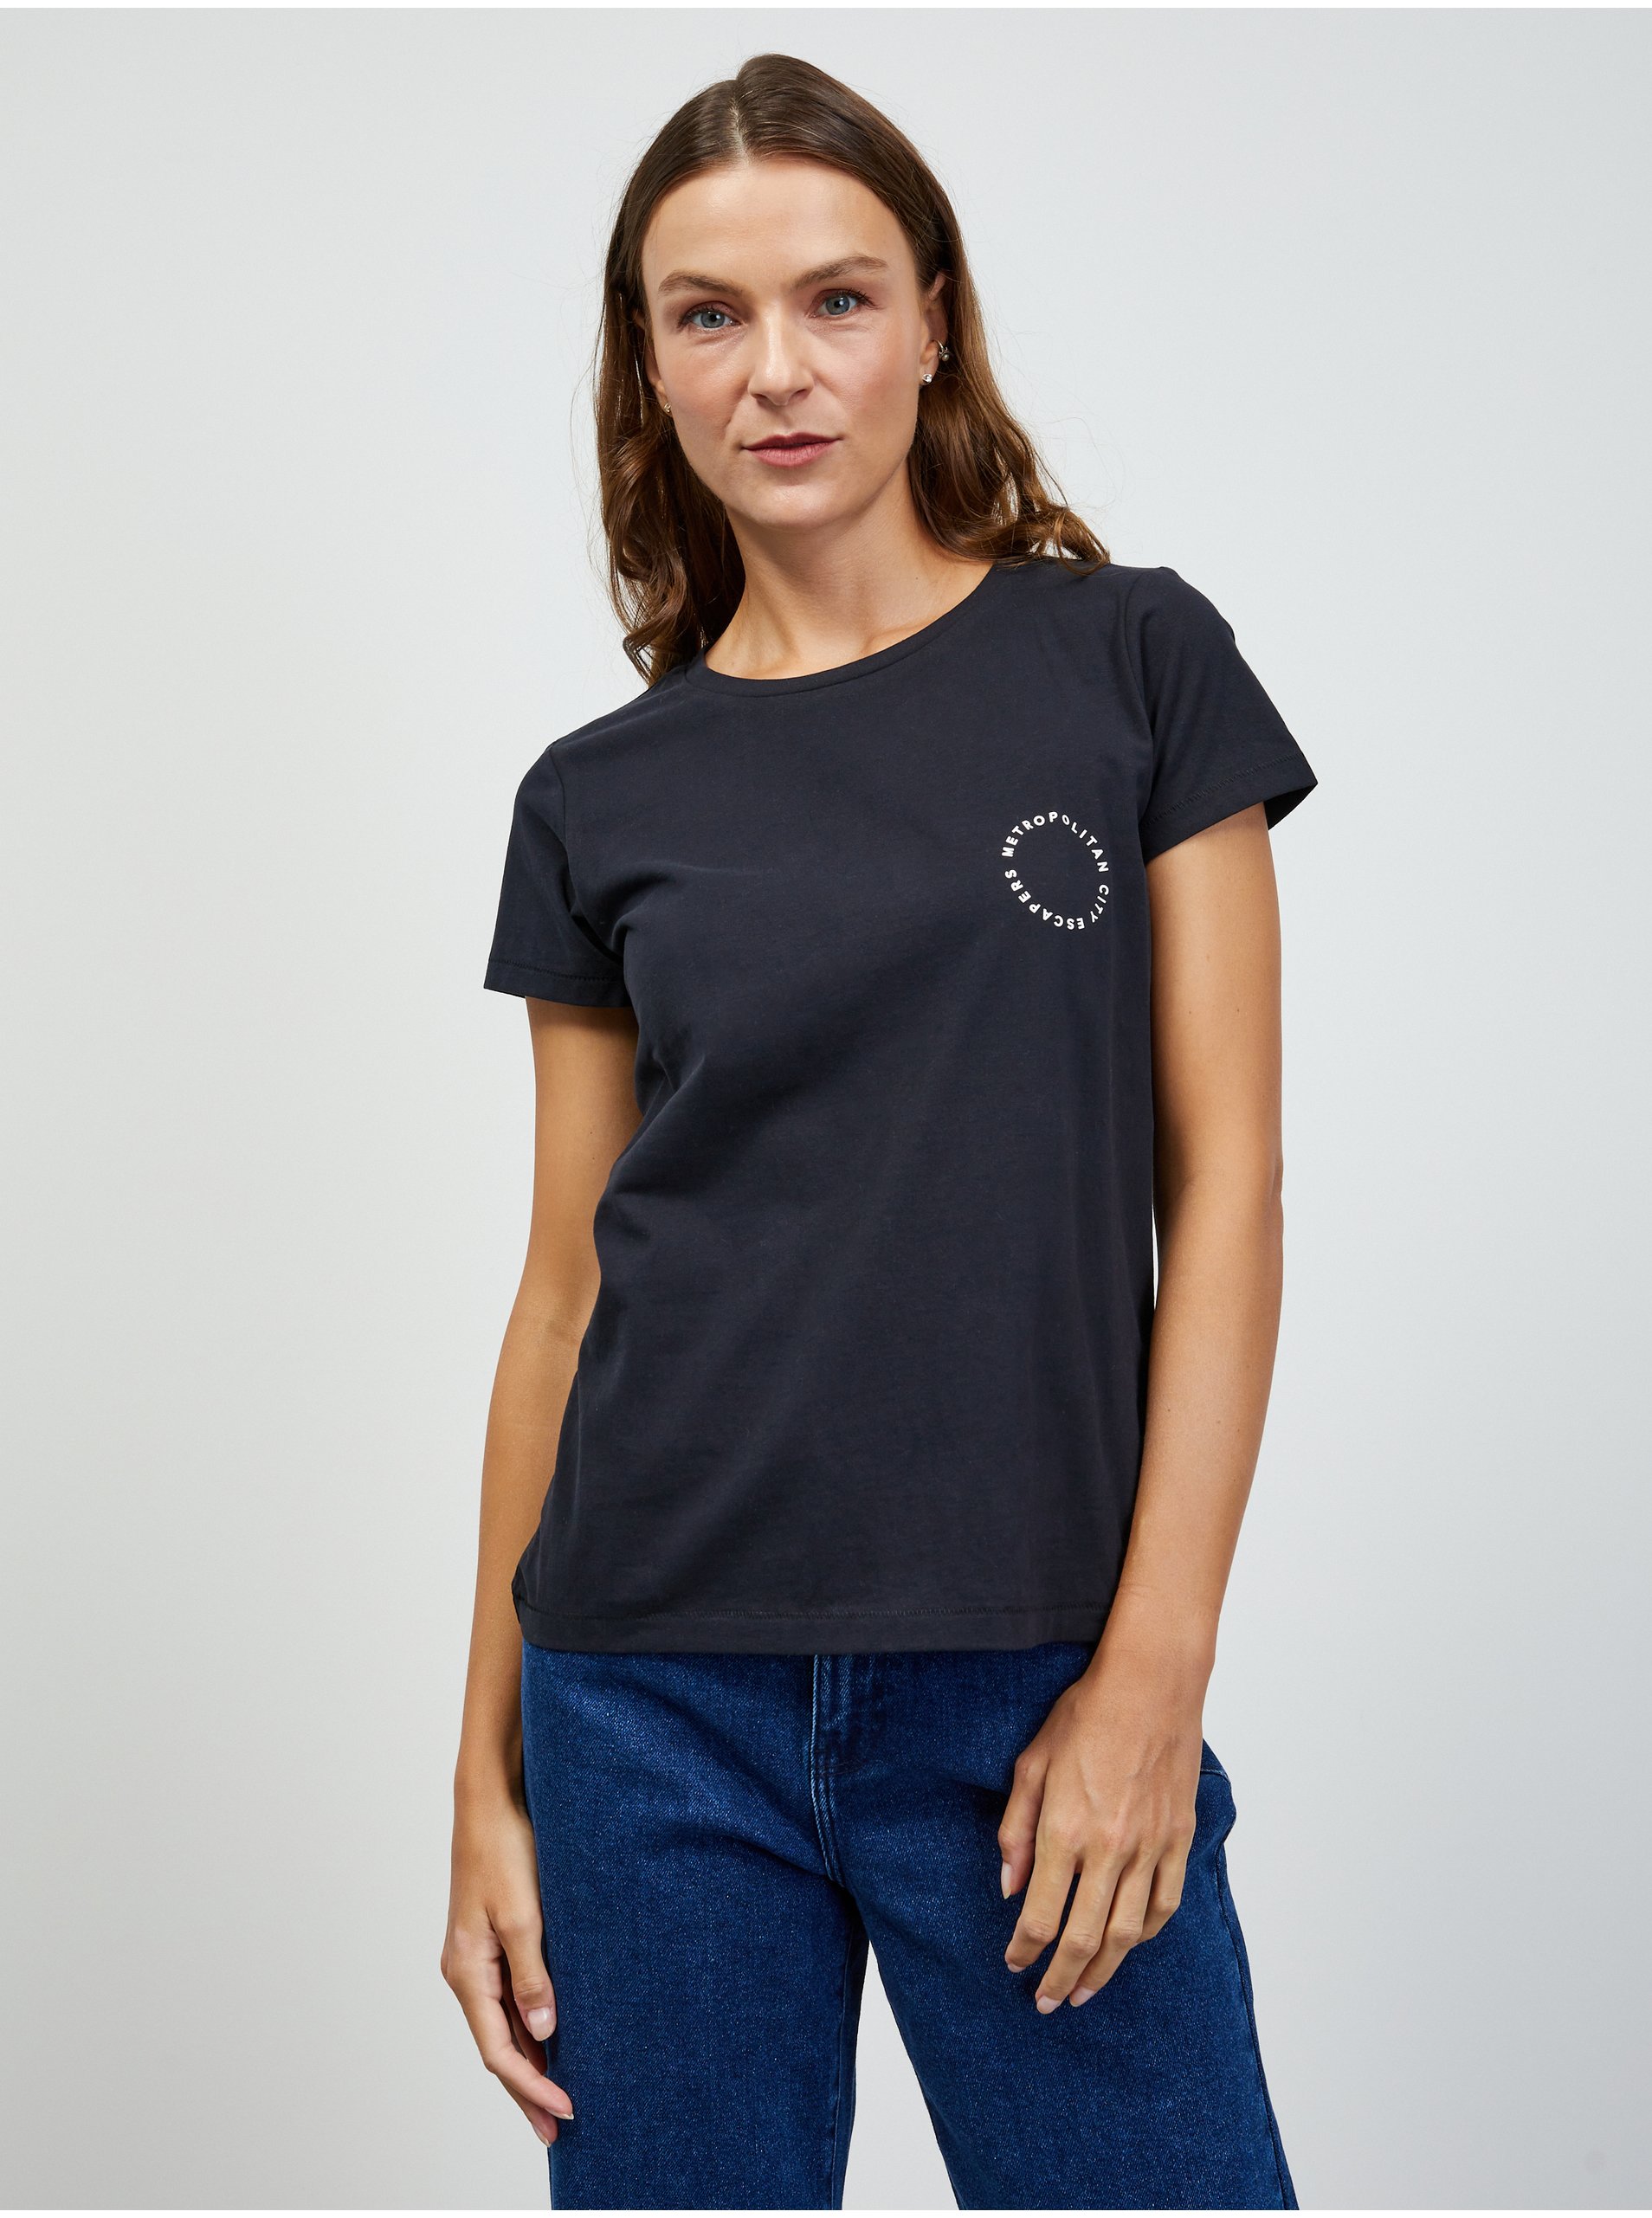 E-shop Čierne dámske tričko ZOOT.lab Enya